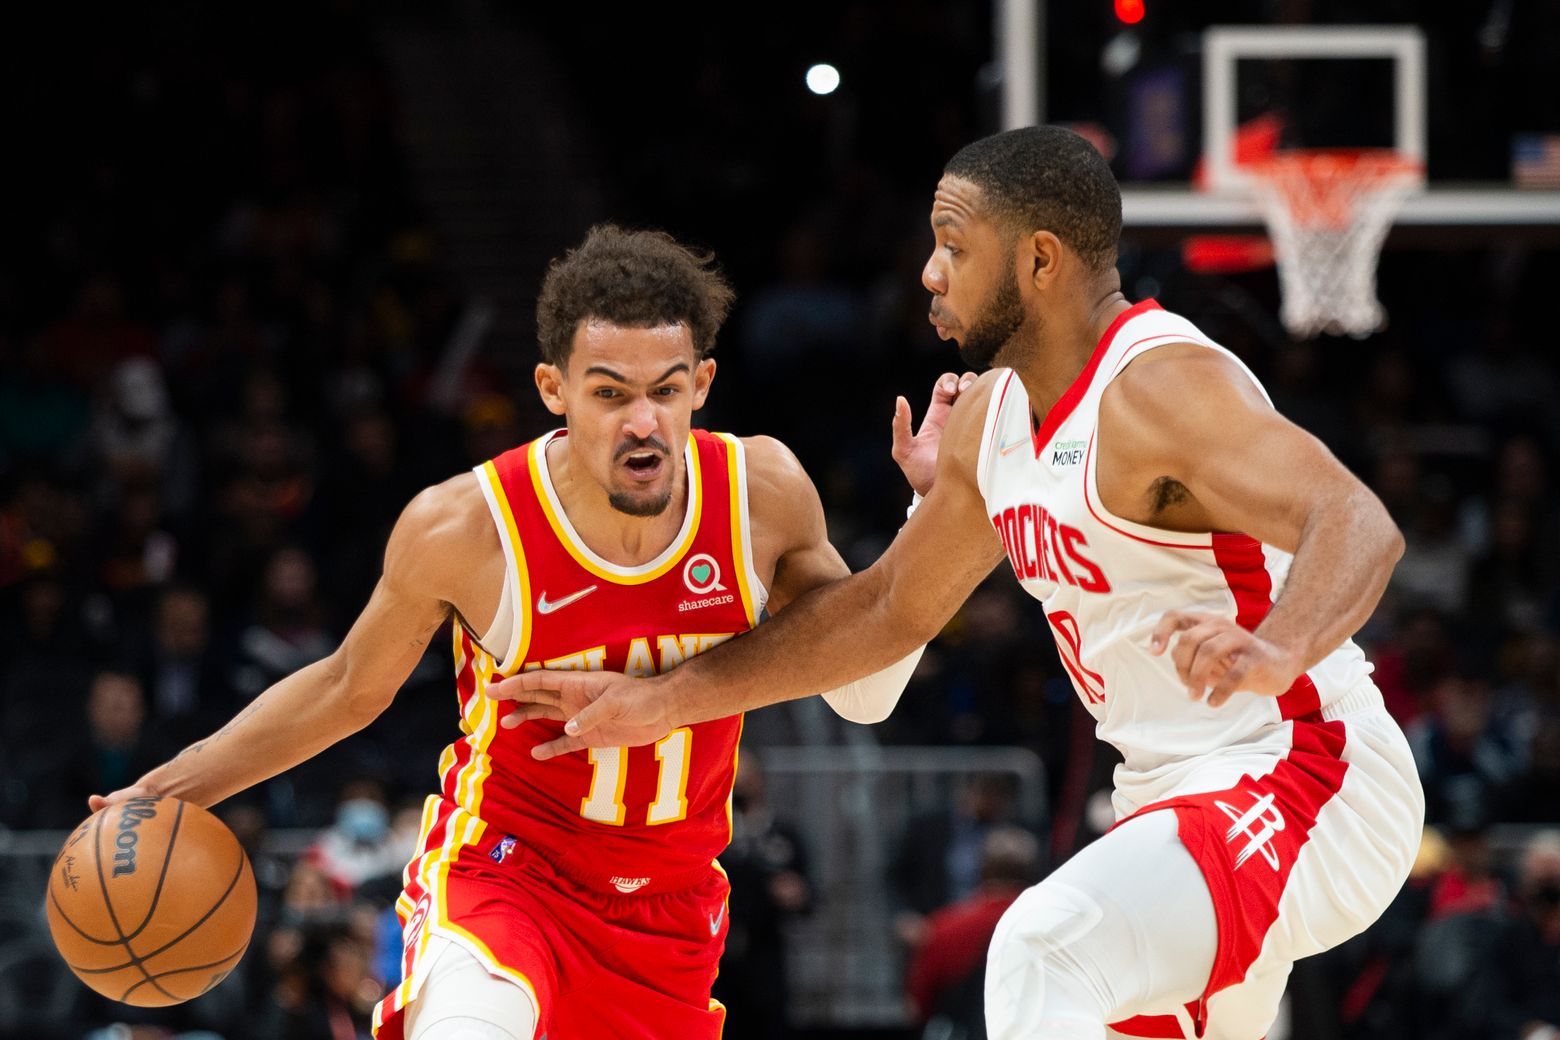 LISTEN: How good was D.J. Augustin in Rockets comeback vs. Hawks